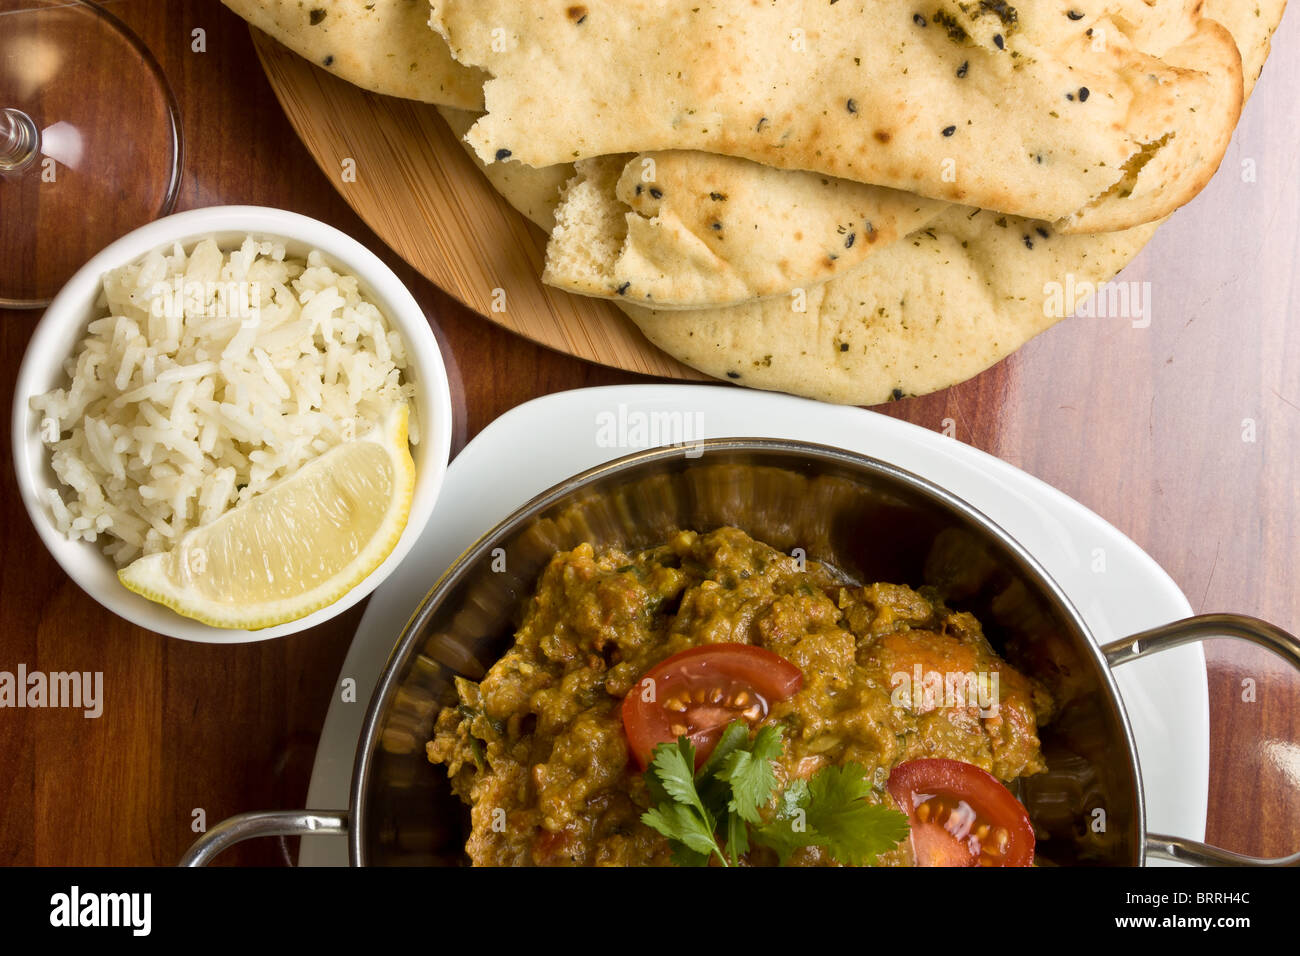 Indisches Curry Mahlzeit Huhn, Reis und Naan Brot. Stockfoto